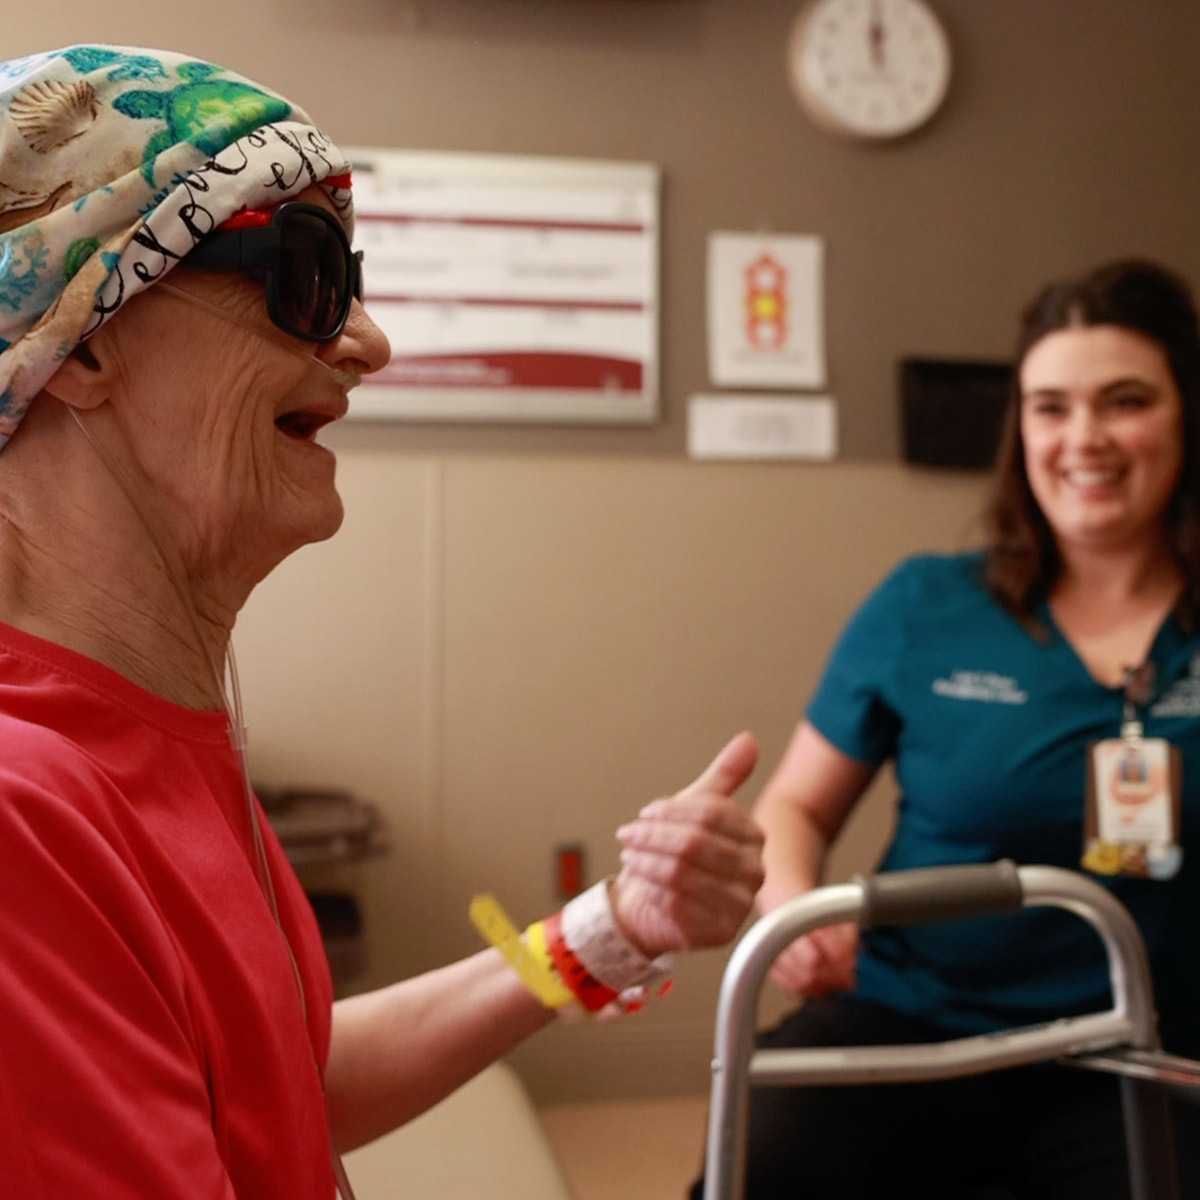 Una paciente con una venda en la cabeza sonríe mientras su terapeuta de rehabilitación sonríe en el fondo